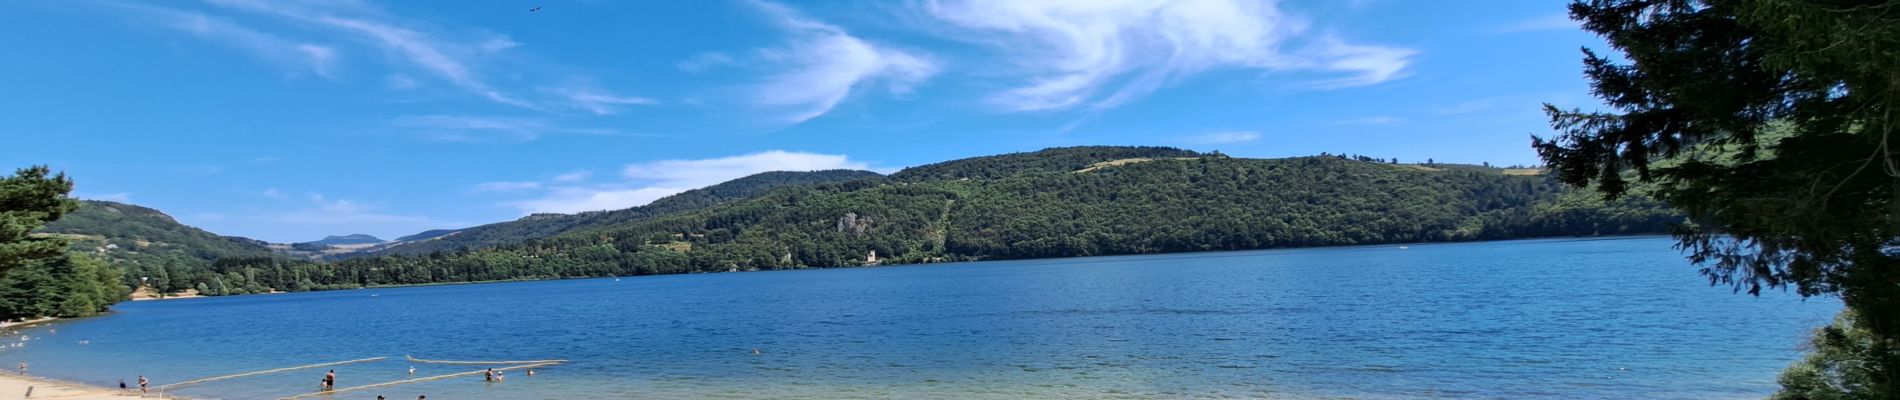 Tocht Stappen Le Lac-d'Issarlès - Grand tour lac d'Issarlès - Photo